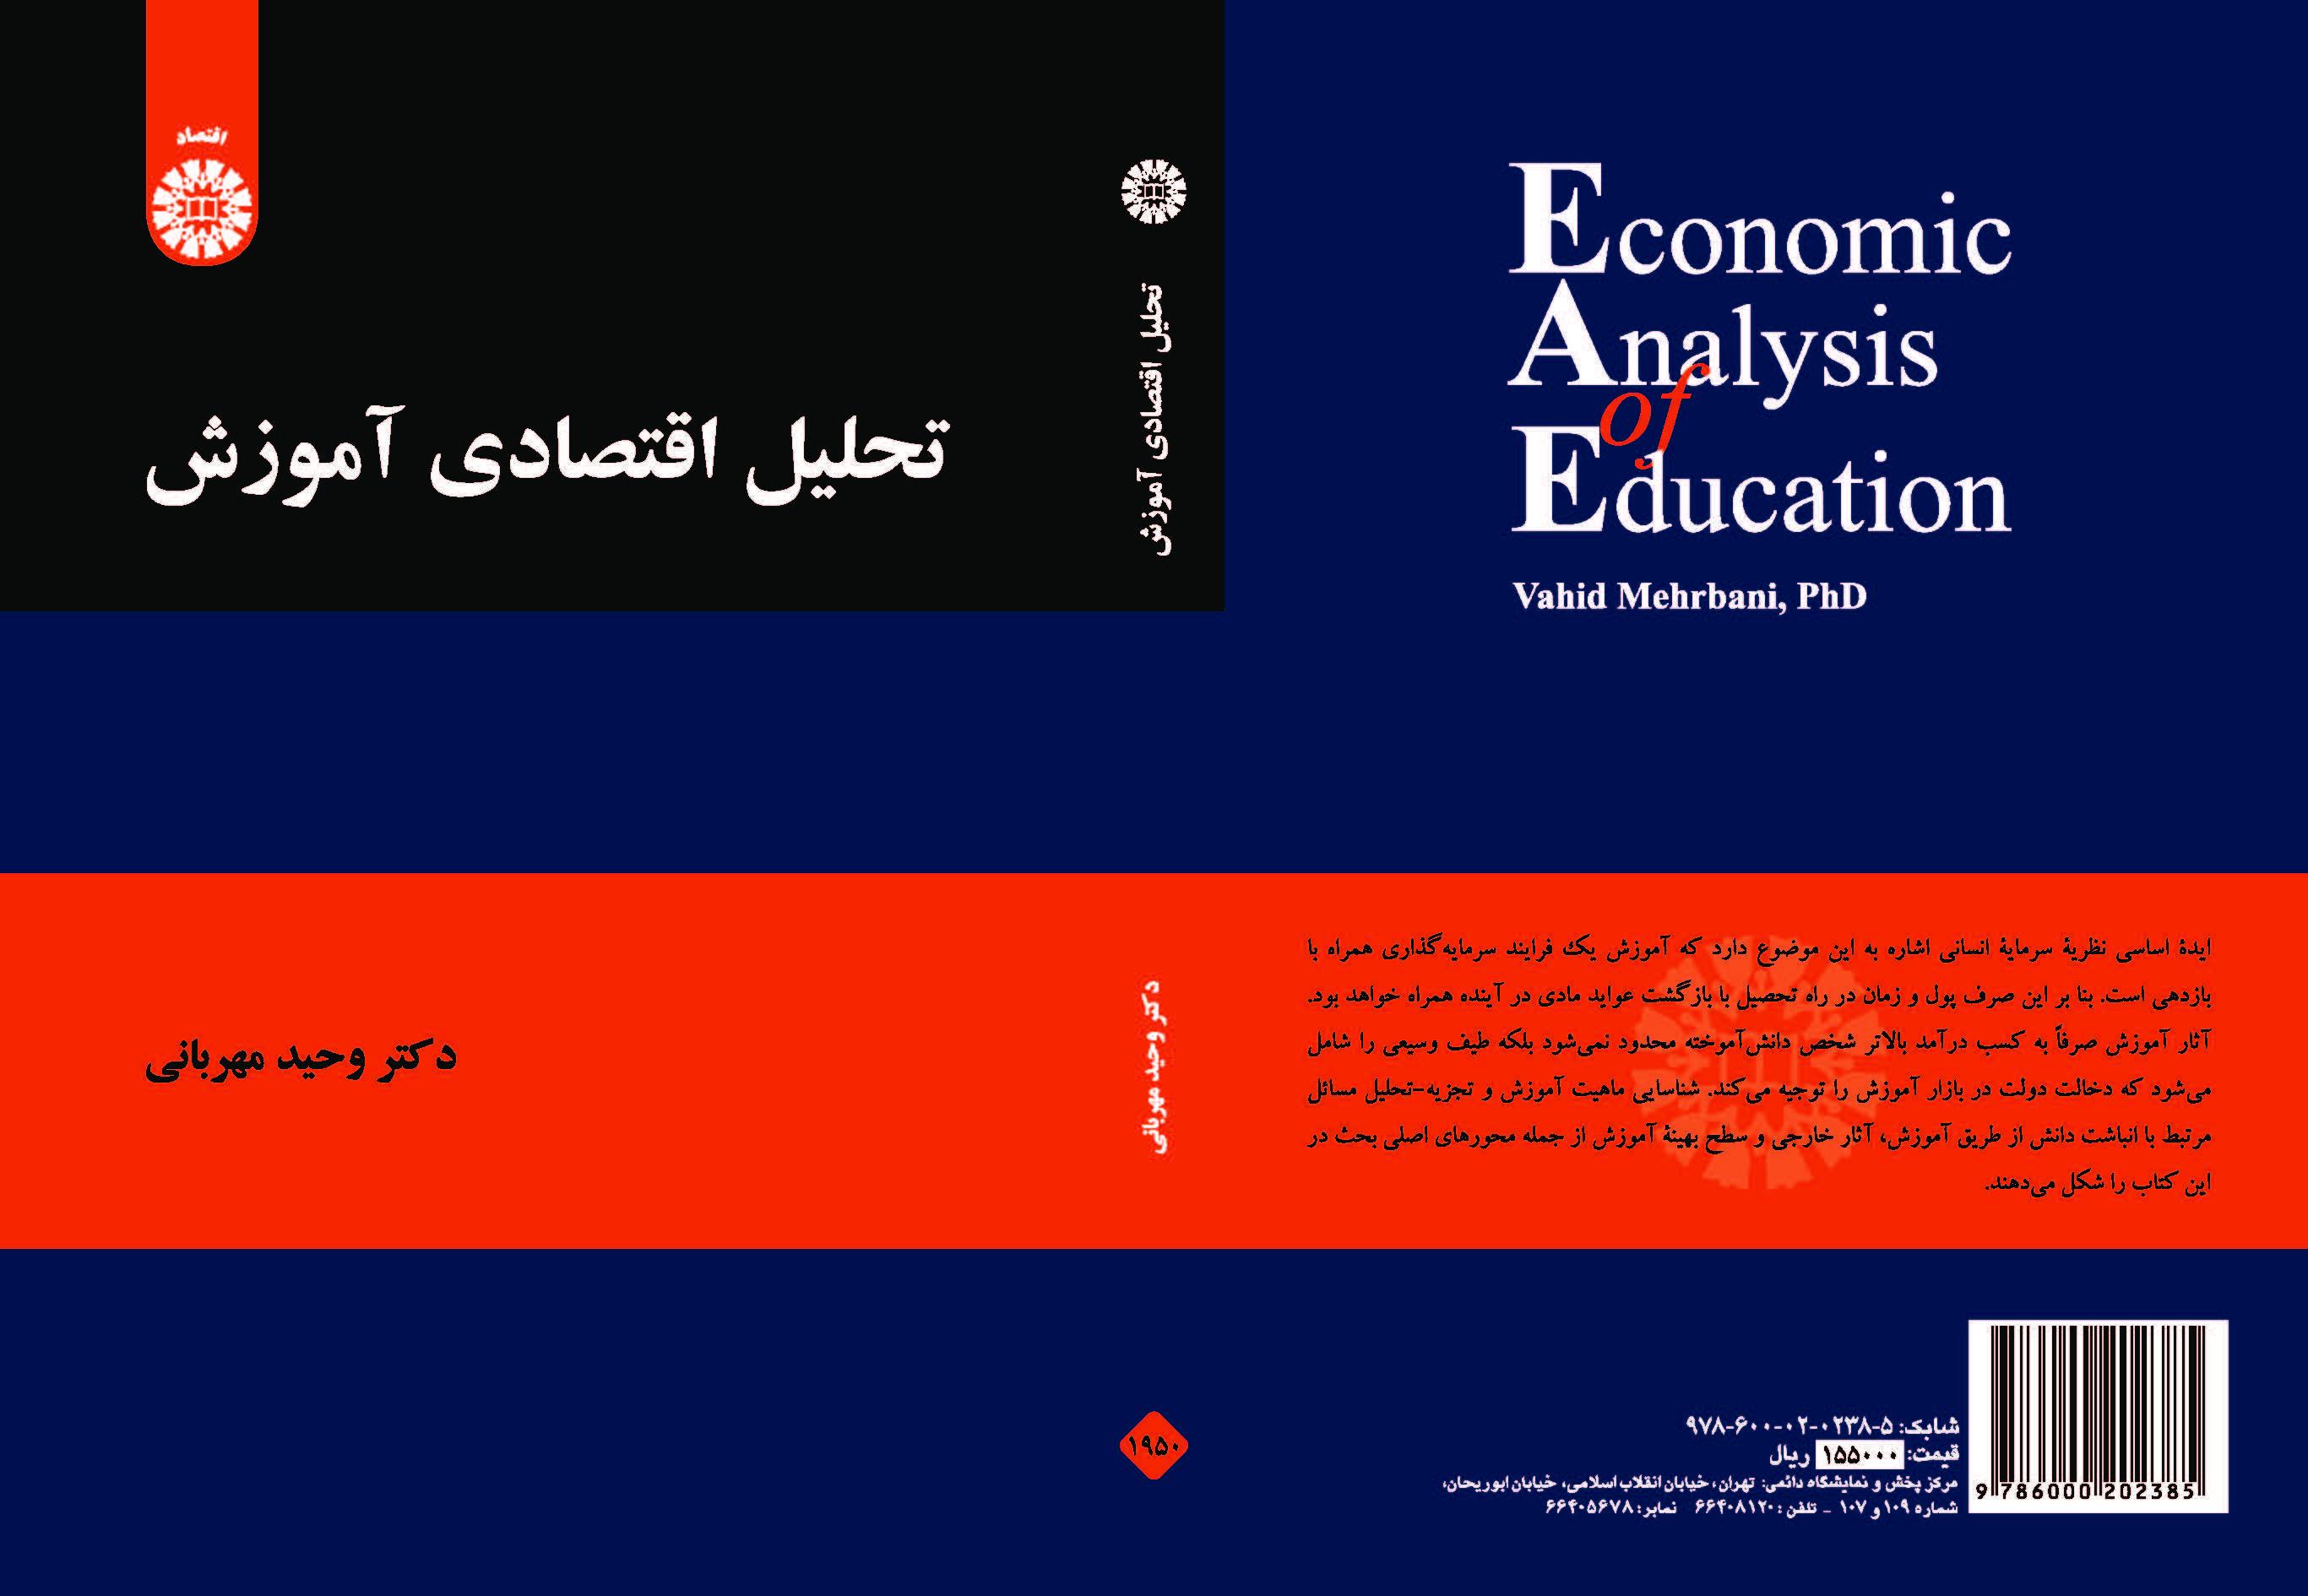 التحليل الاقتصادي للتعليم